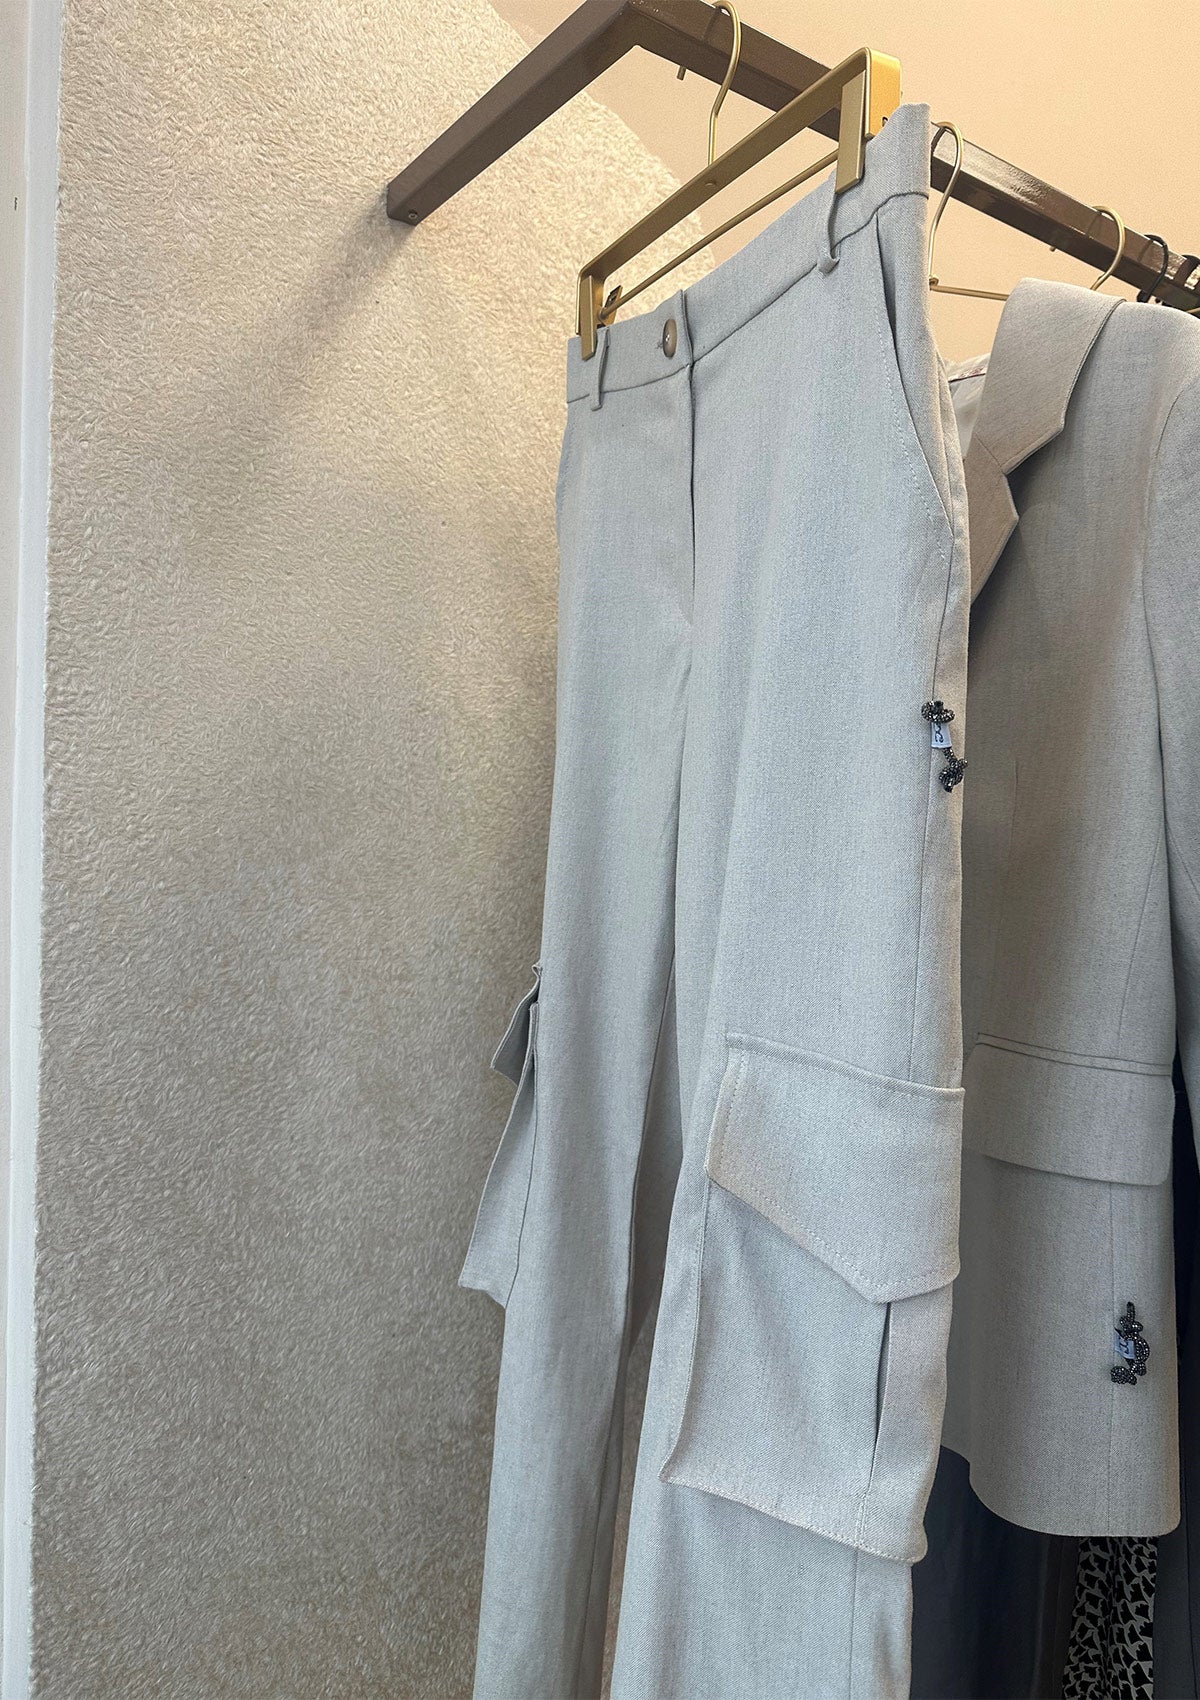 Ленен дамски костюм от cargo панталон/топ/сако CARGO SUIT лятна визия ленено облекло street style